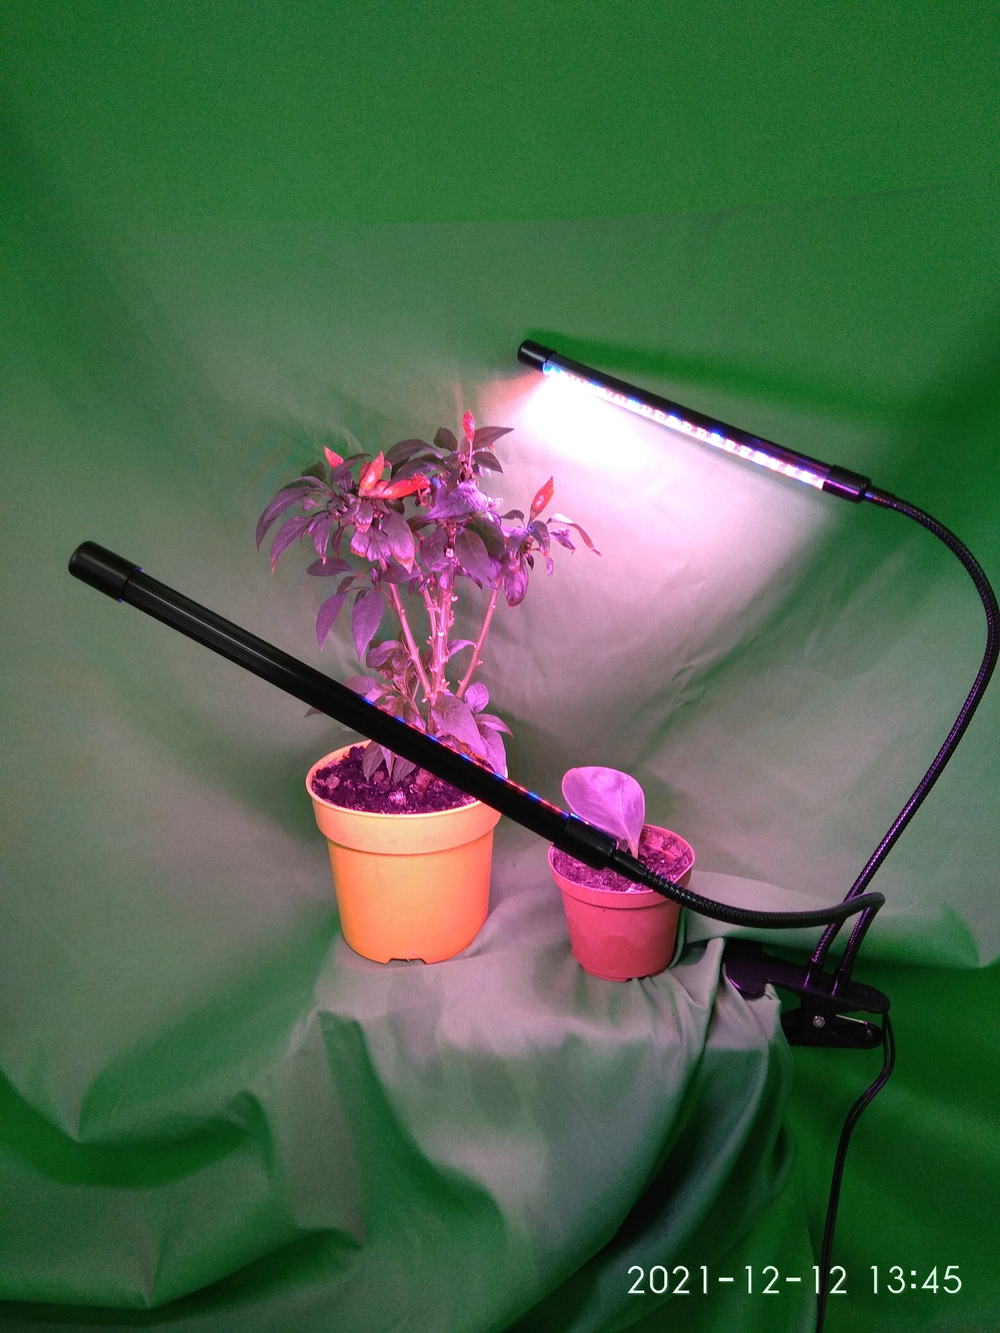 Фито-лампа "Стриж" для выращивания растений (СЕЗОННАЯ СКИДКА)